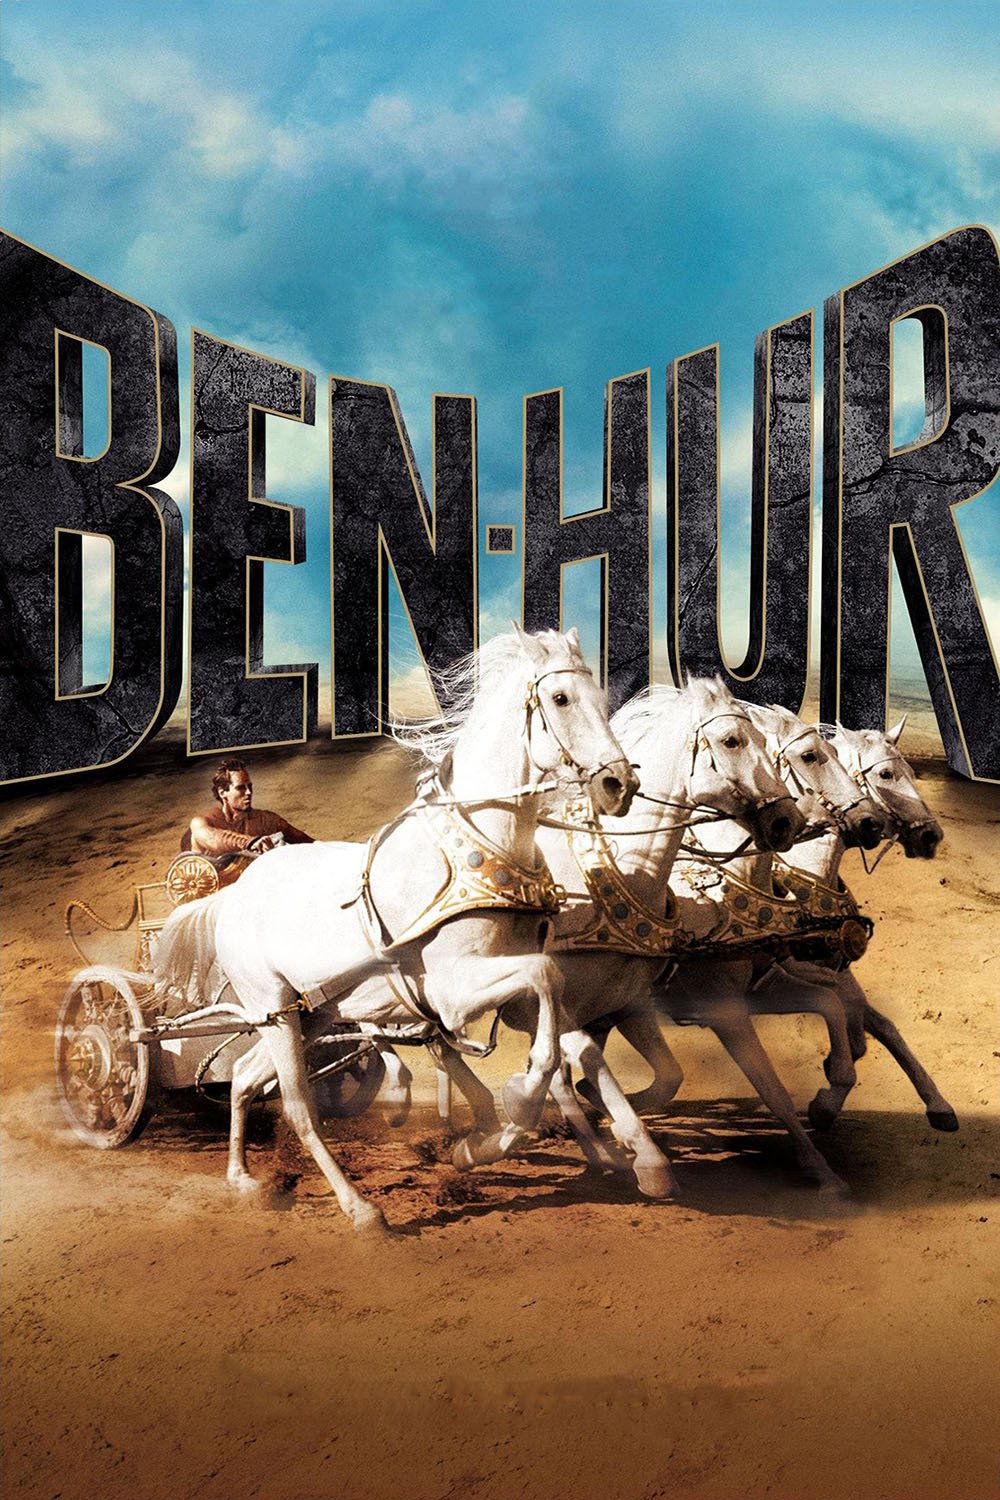 Plakat von "Ben Hur"